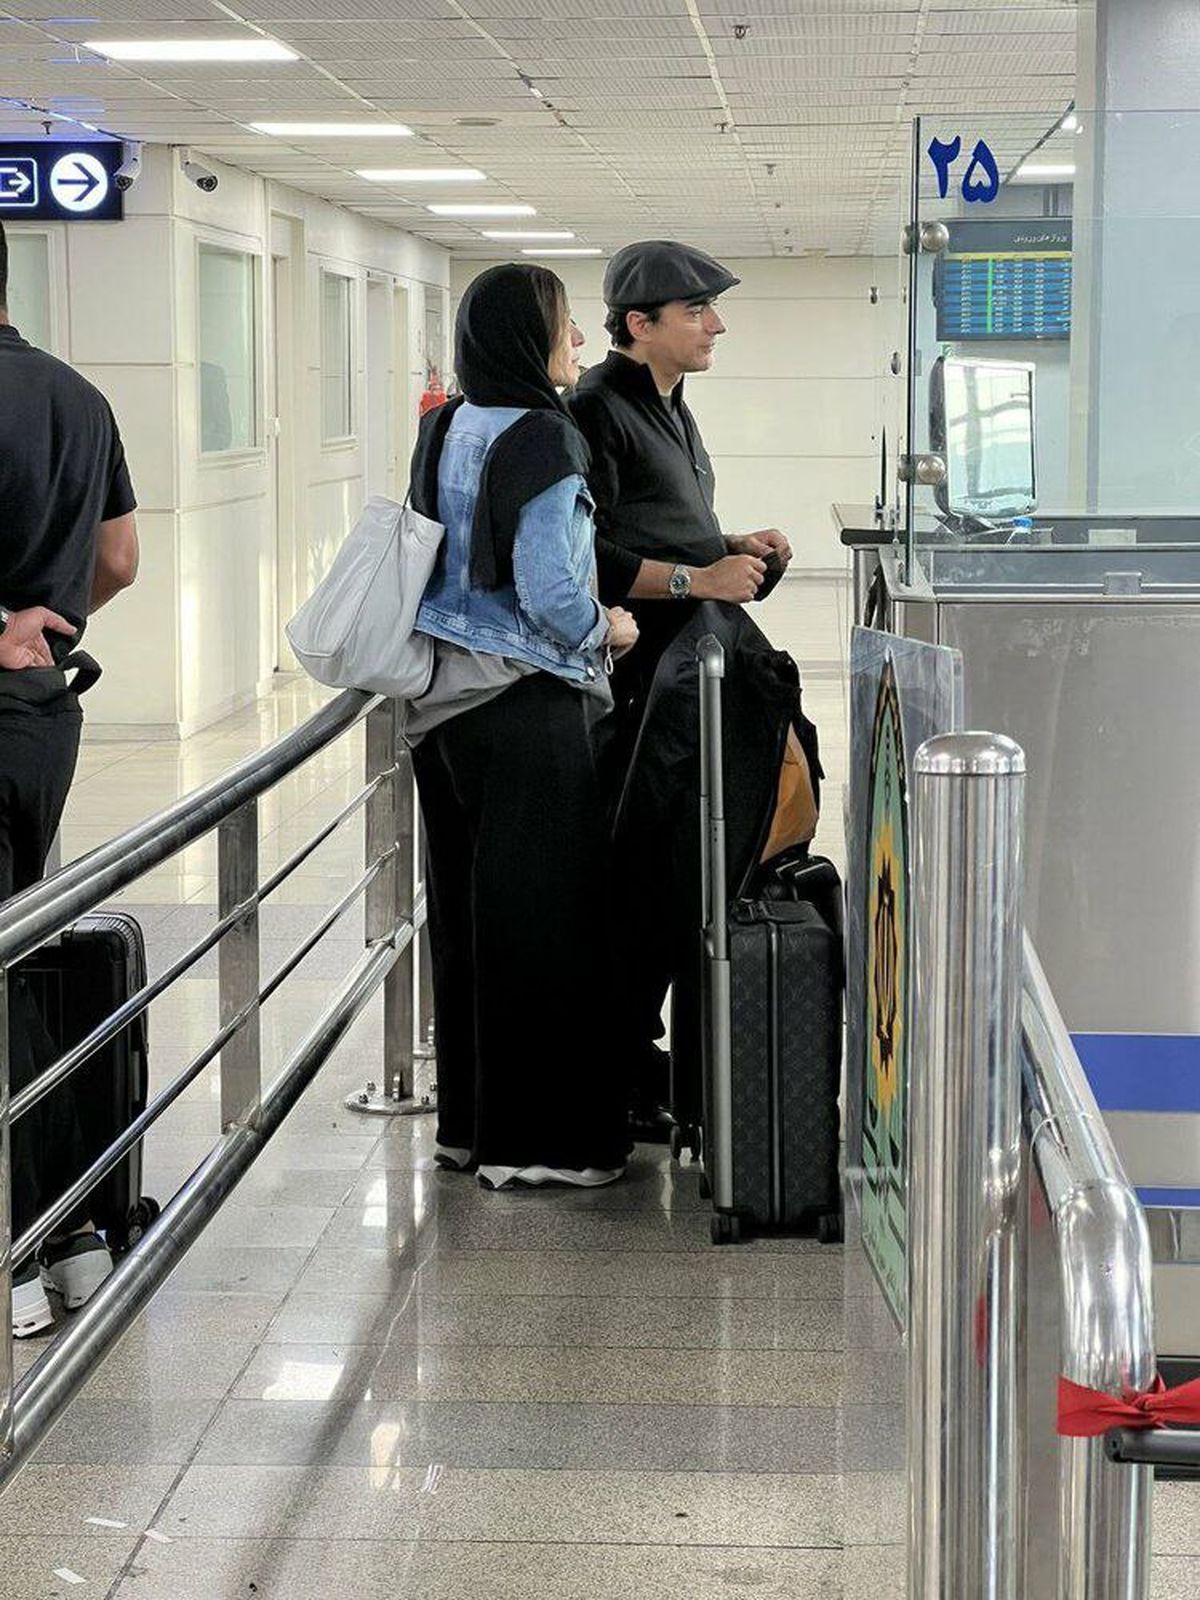 اولین تصویر از لحظه توقیف پاسپورت همایون شجریان و سحر دولتشاهی در فرودگاه